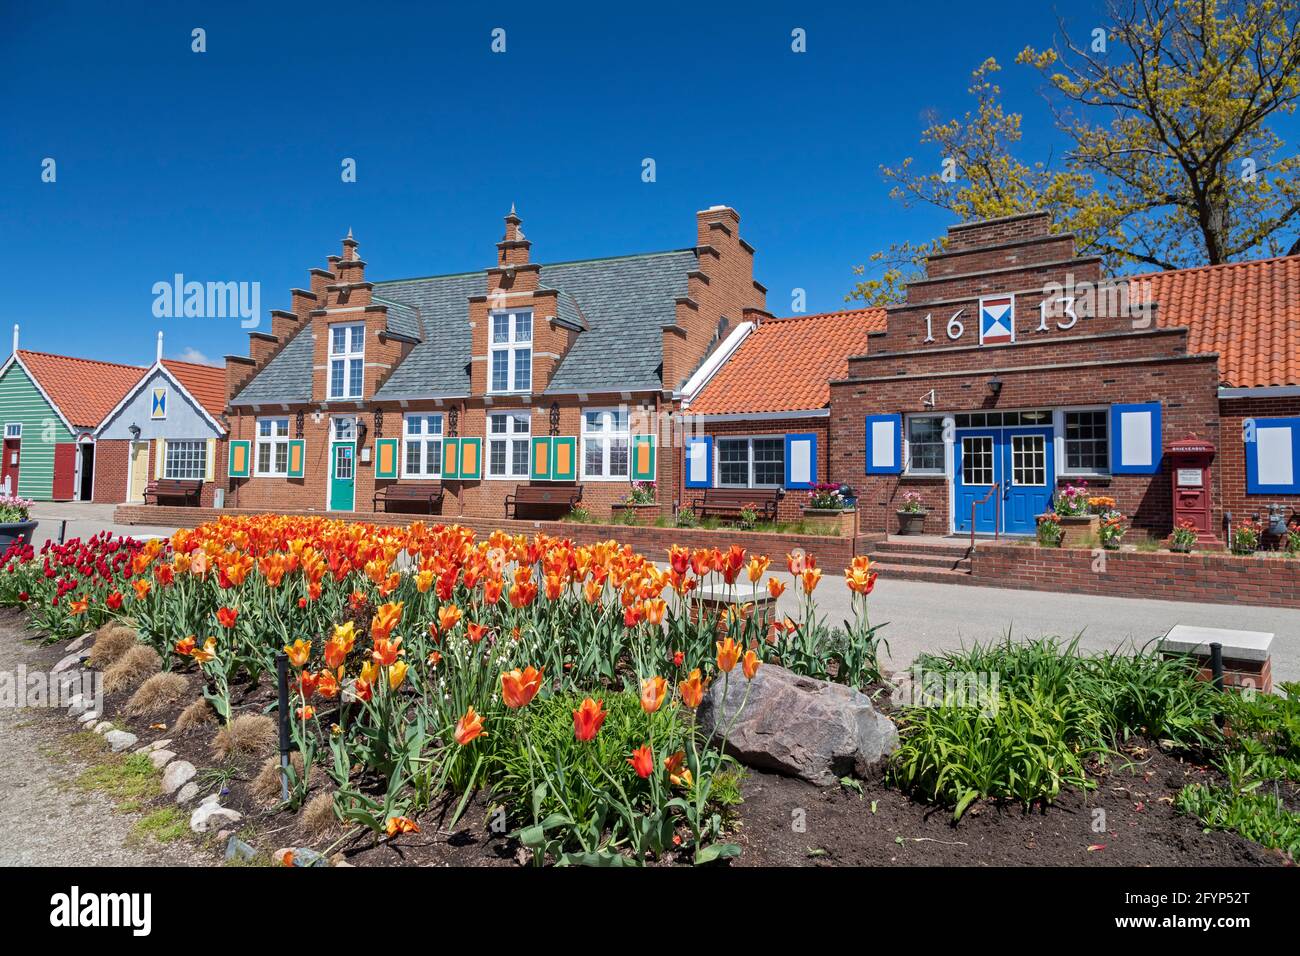 Holland, Michigan - Windmill Island Gardens, un parc de la ville, pendant le festival de tulipe de printemps de Hollande. L'événement annuel célèbre l'héritag hollandais de la ville Banque D'Images